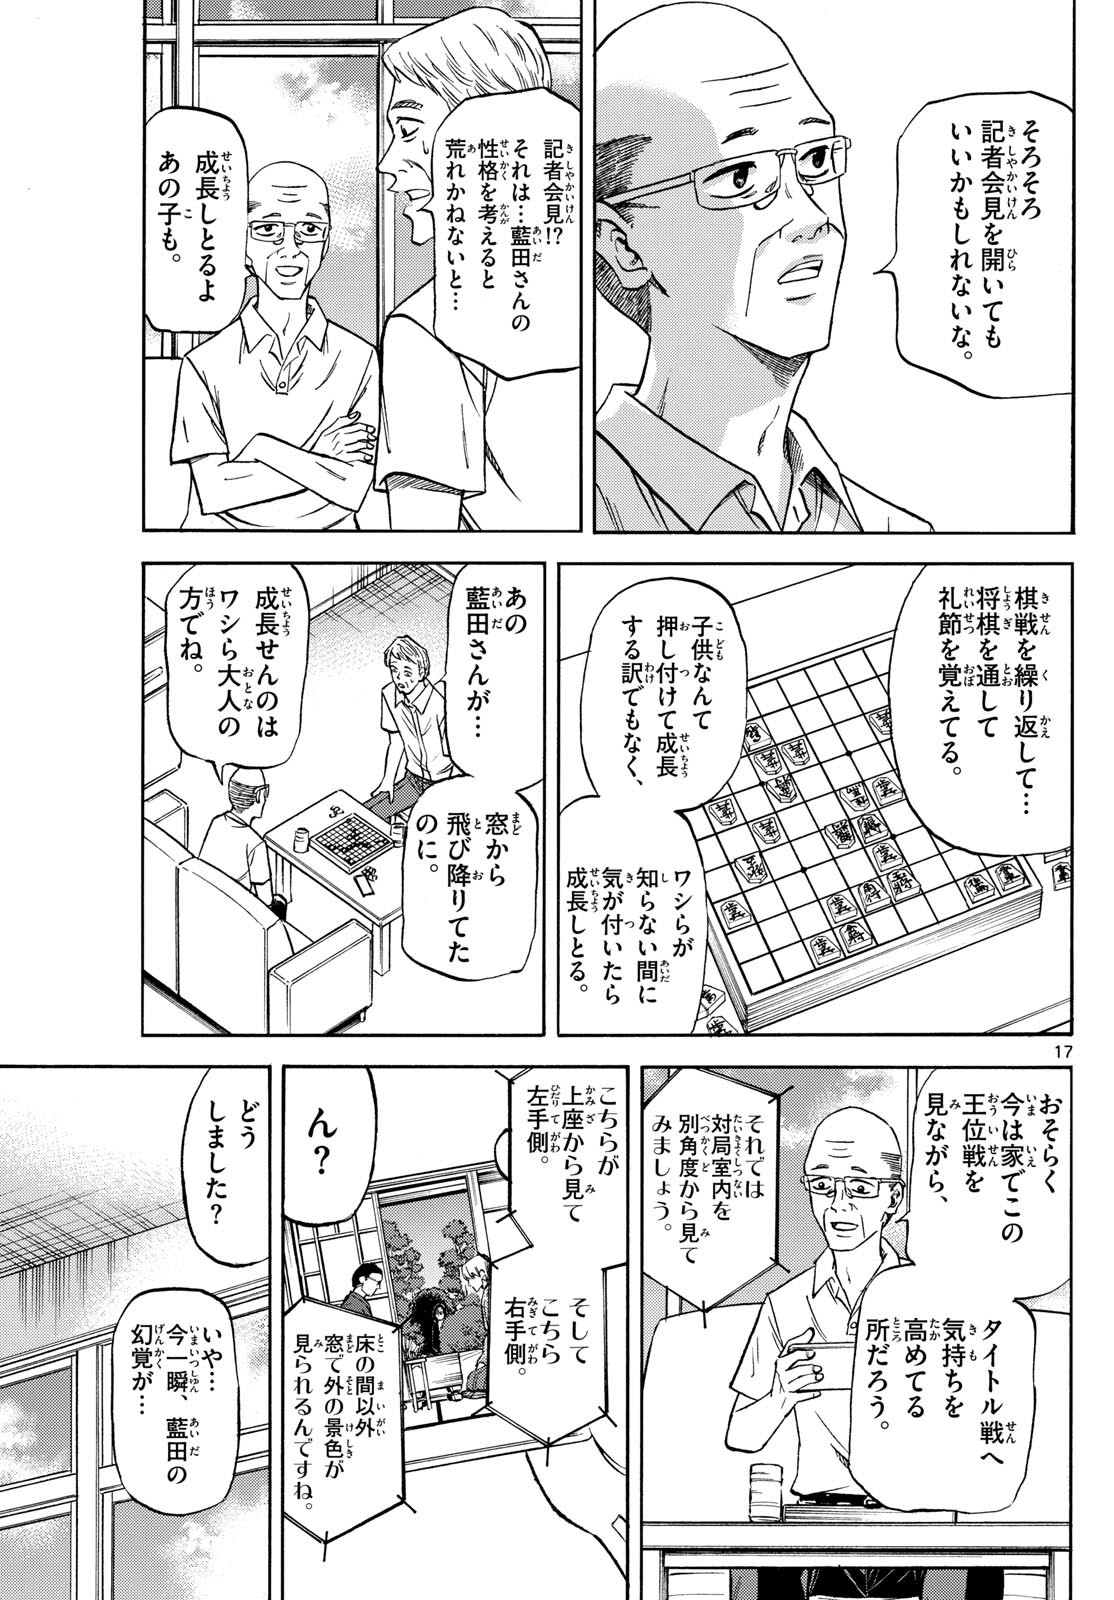 Ryu-to-Ichigo - Chapter 146 - Page 17